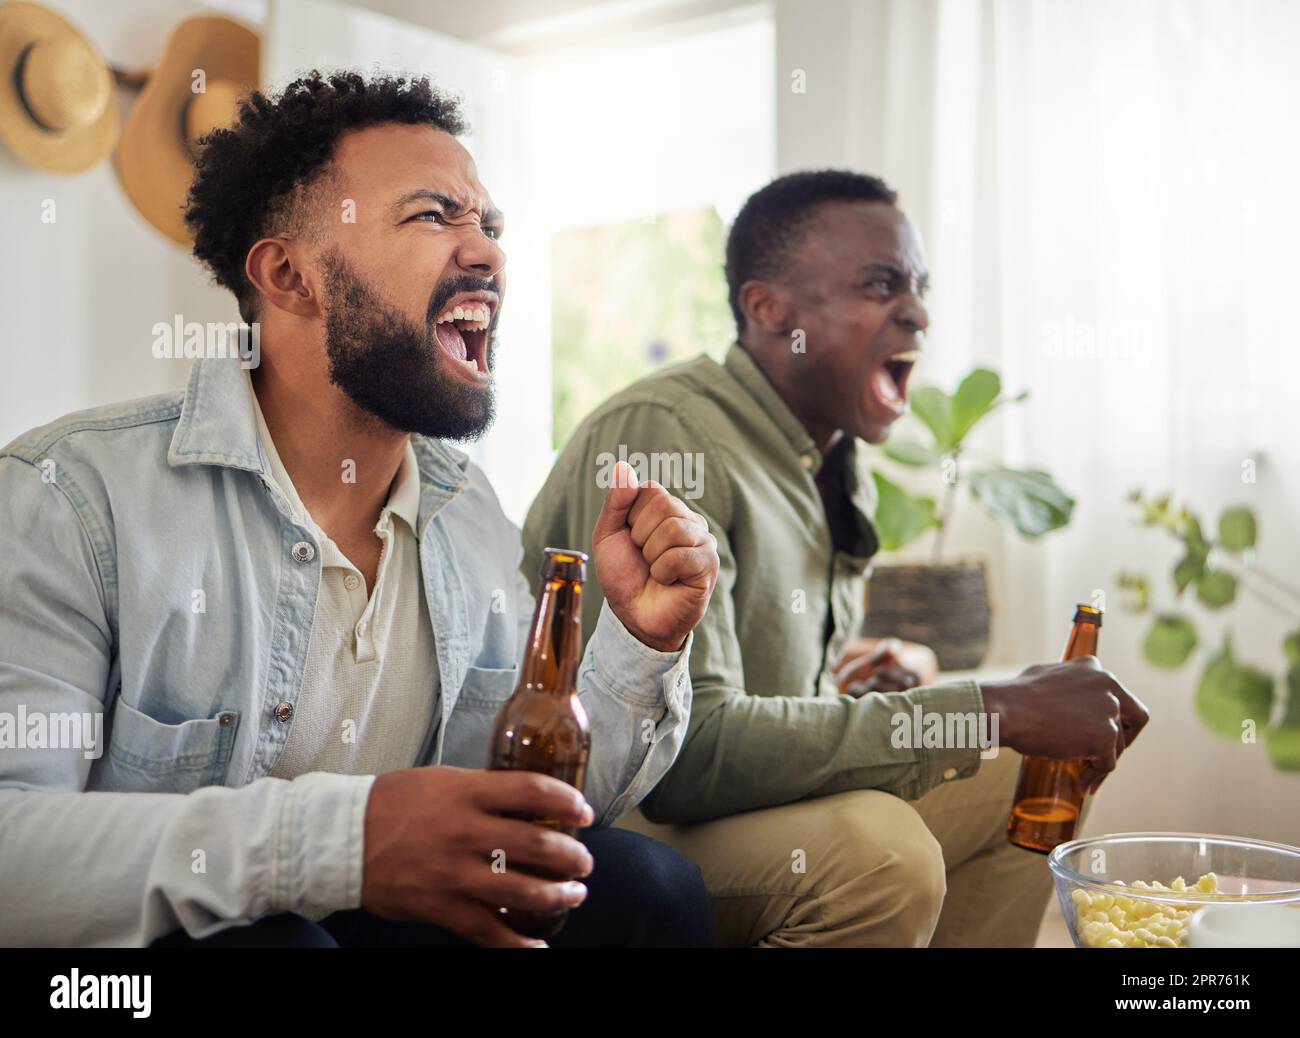 Haben dieses hier gewonnen. Aufnahme von zwei männlichen Freunden, die beim Bieren und Beisitzen fröhlich aussehen. Stockfoto